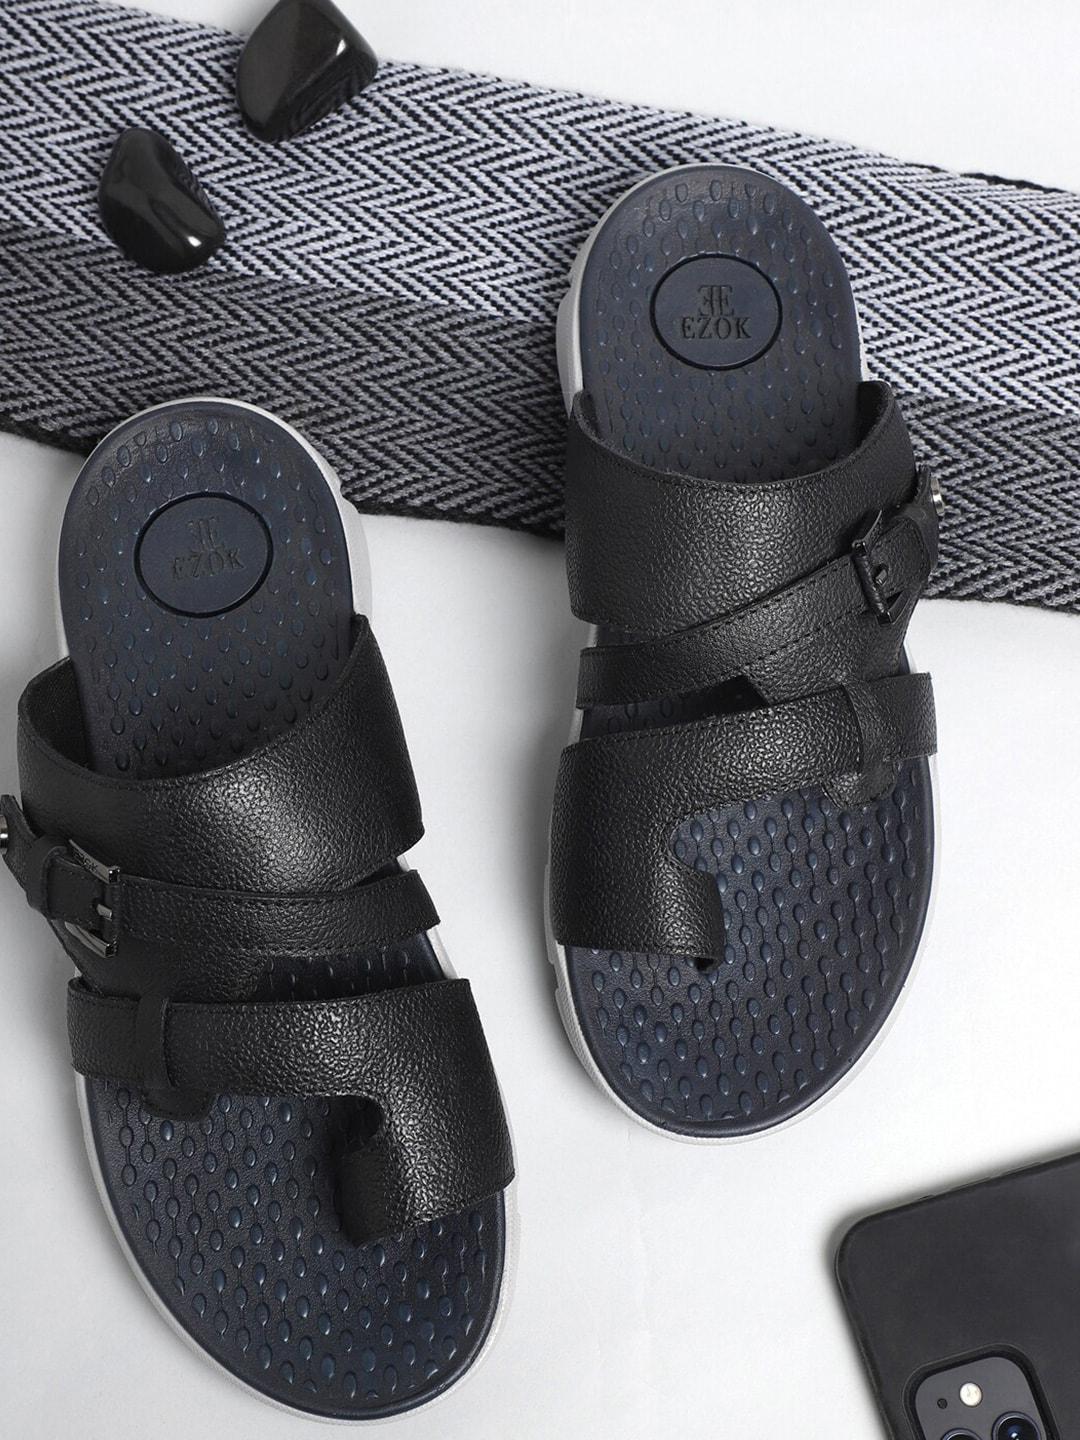 ezok-men-textured-leather-comfort-sandals